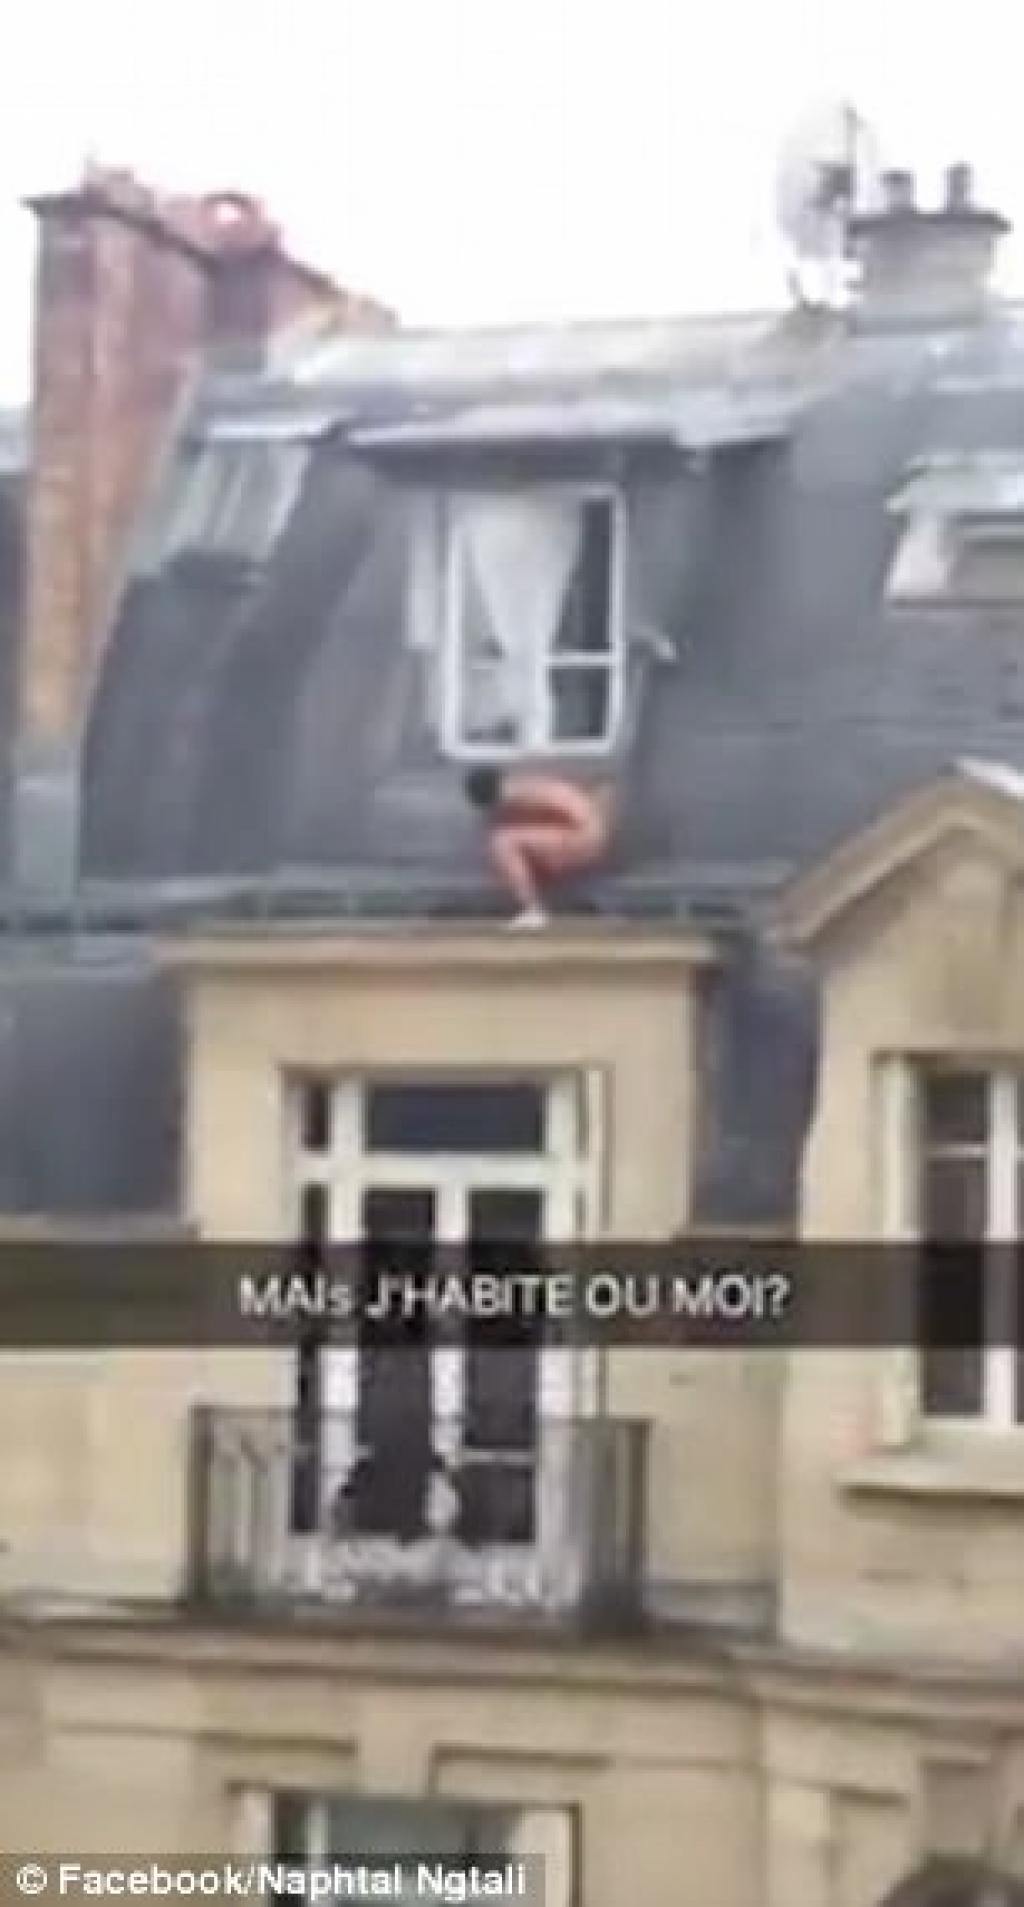 En France, un amant est capté en flagrant délit alors qu'il quitte une maison nu.